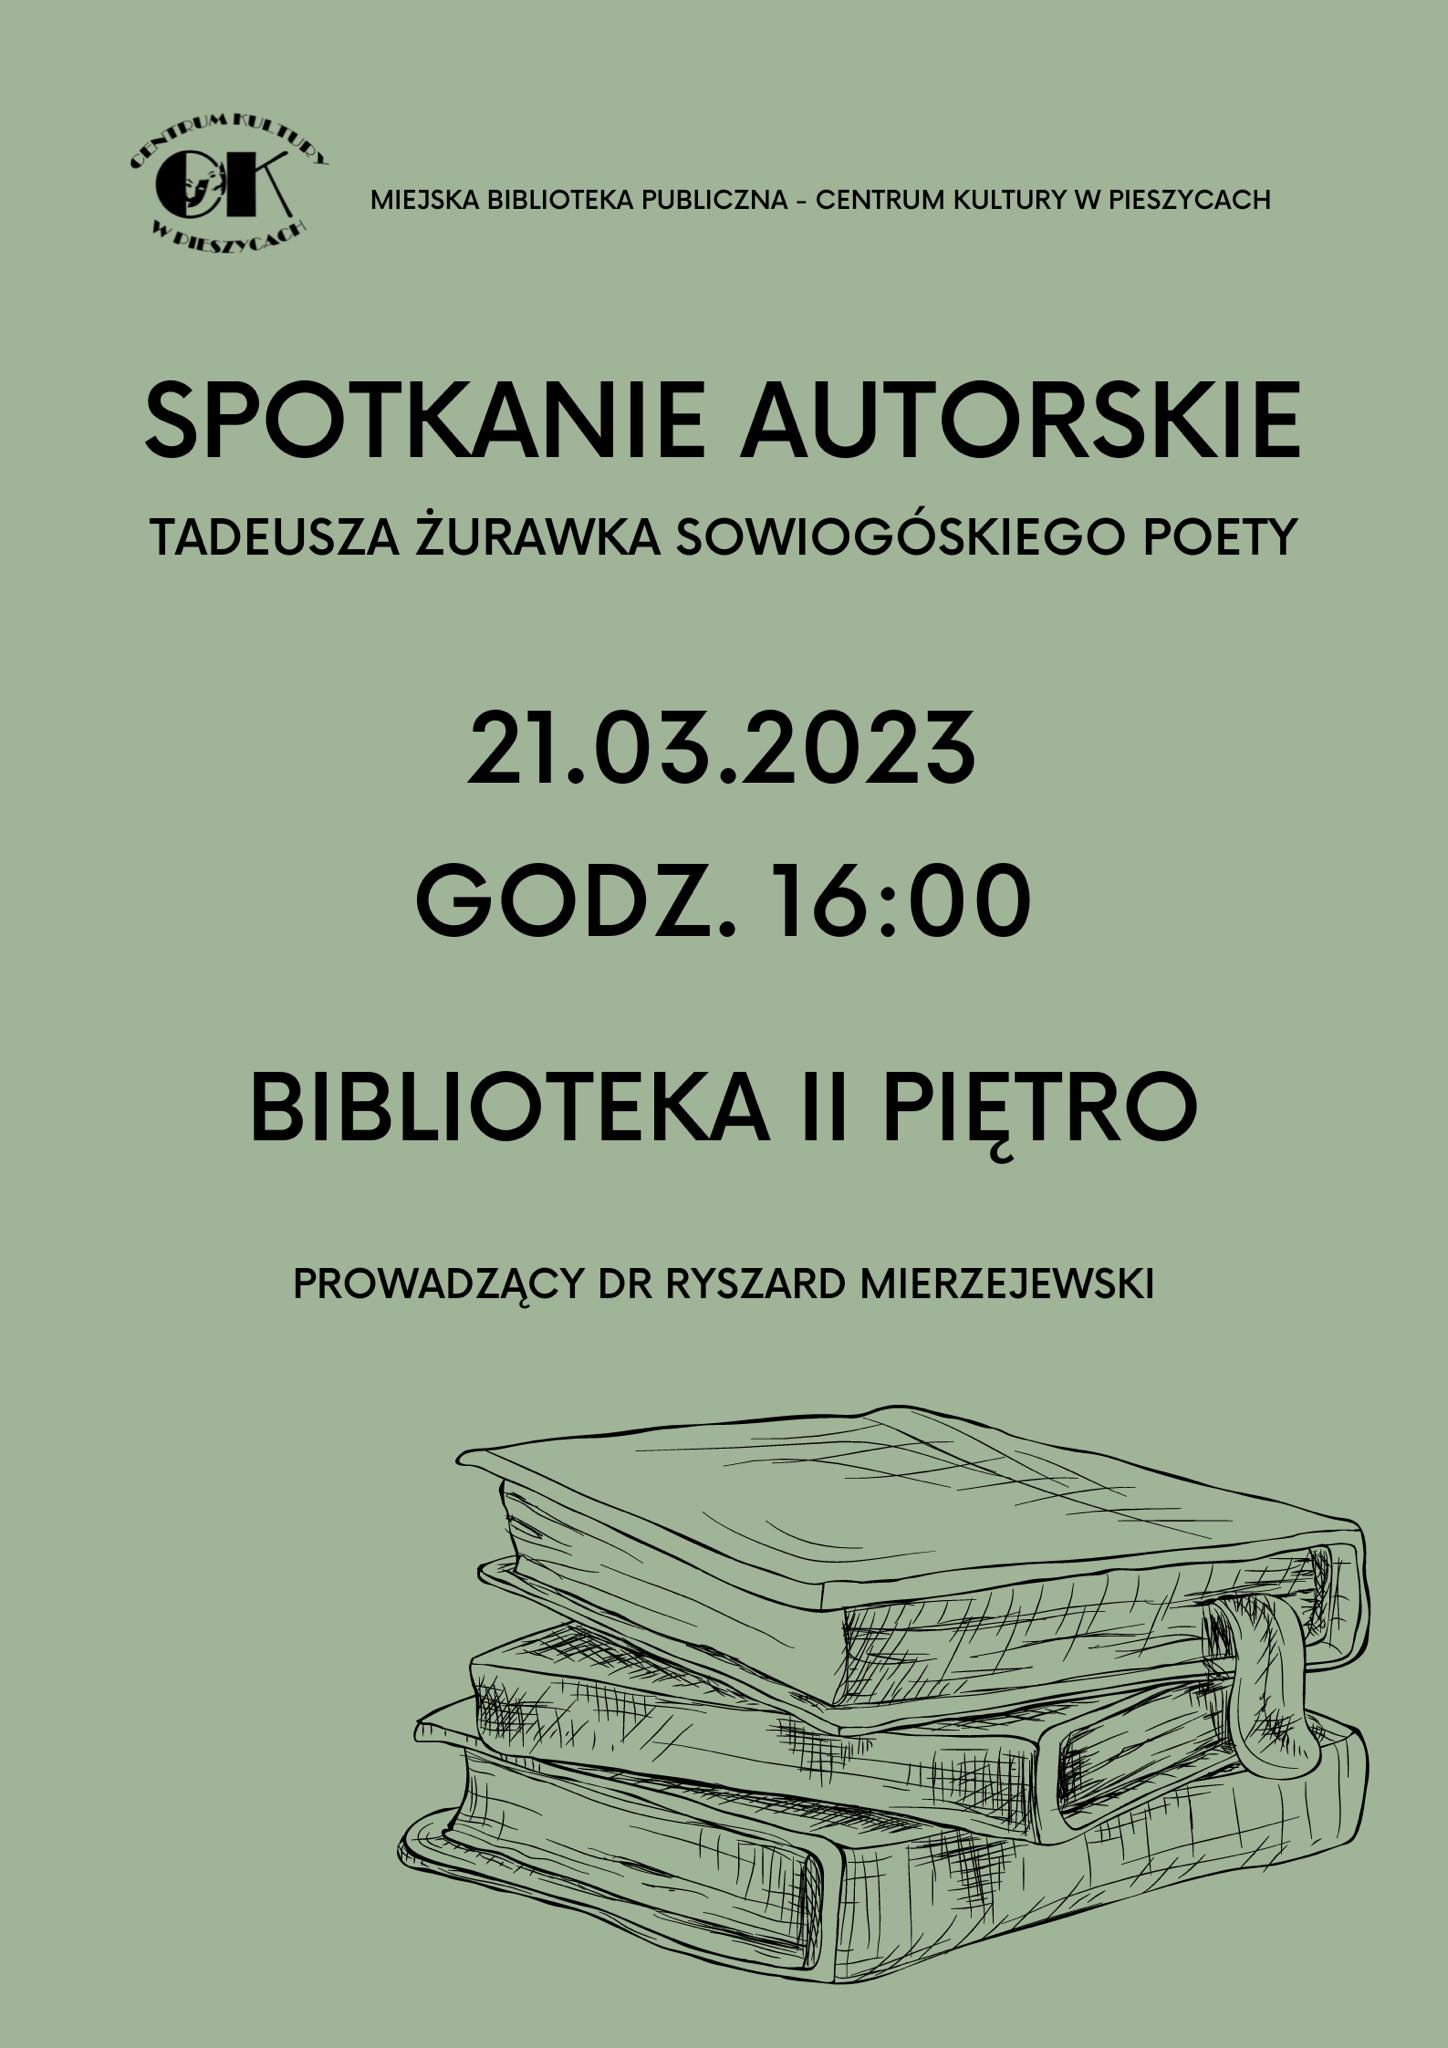 Spotkanie autorskie z lokalnym poetą - Tadeuszem Żurawkiem